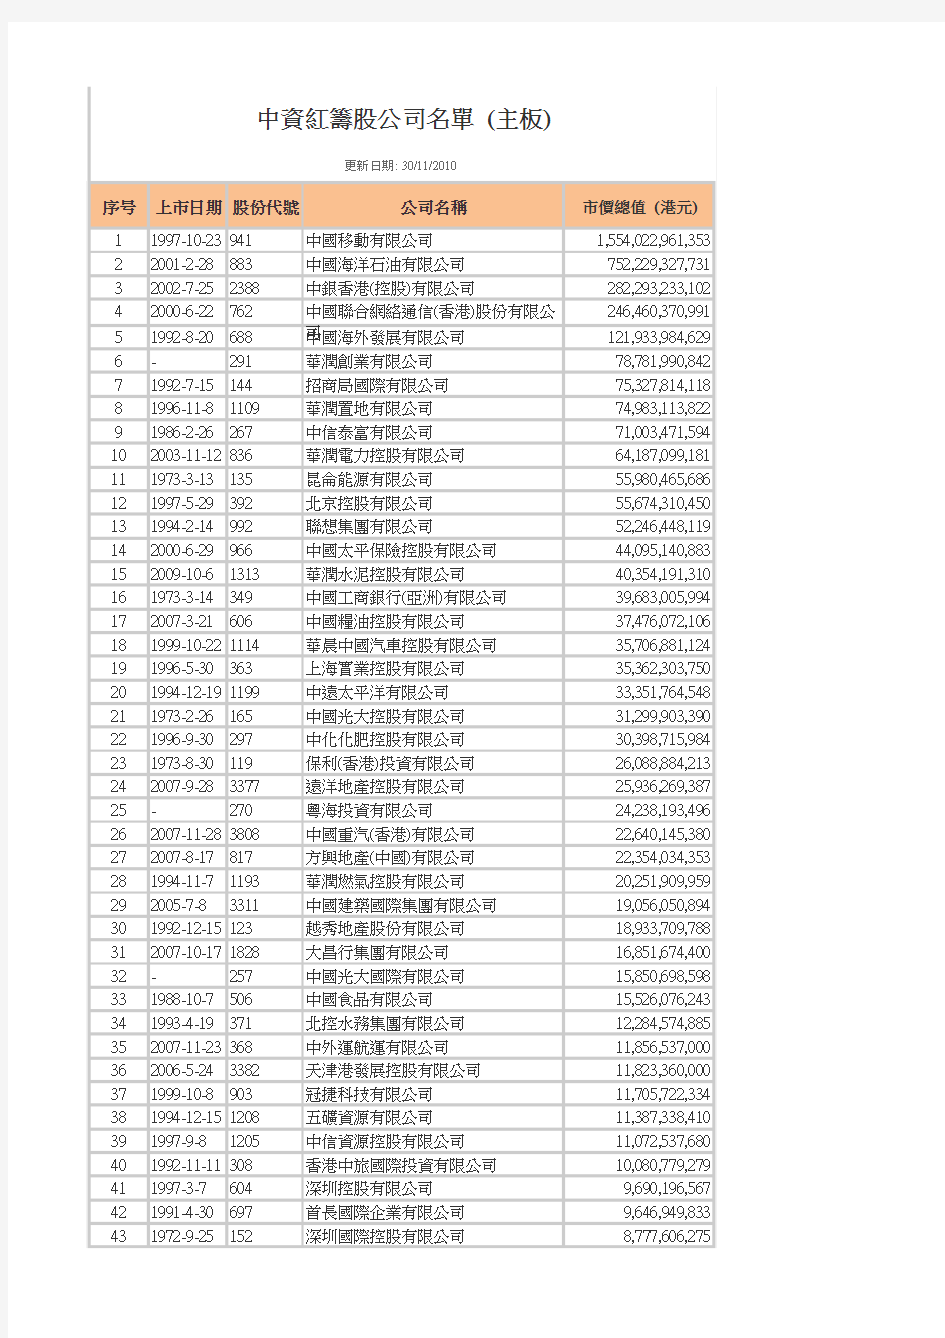 中国公司香港上市名单(H股和红筹上市)